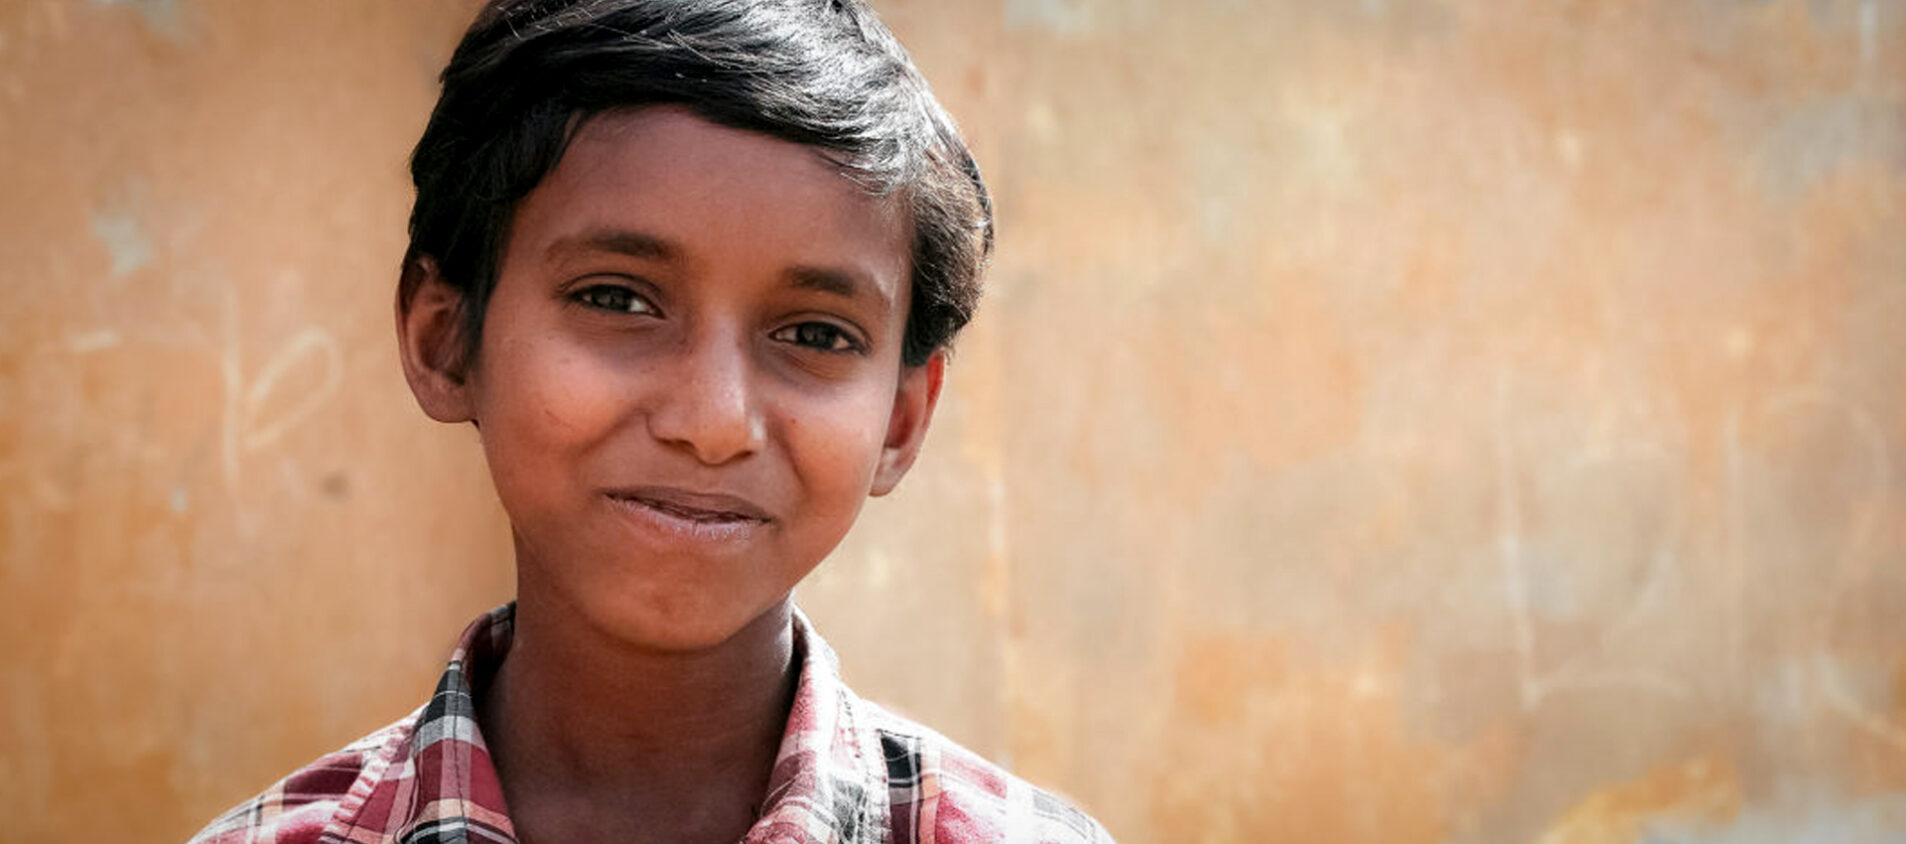 Sakir bor tillsammans med sin familj i utkanten av Indiens huvudstad New Delhi. De bor i stadens fattigaste delar, i slummen.